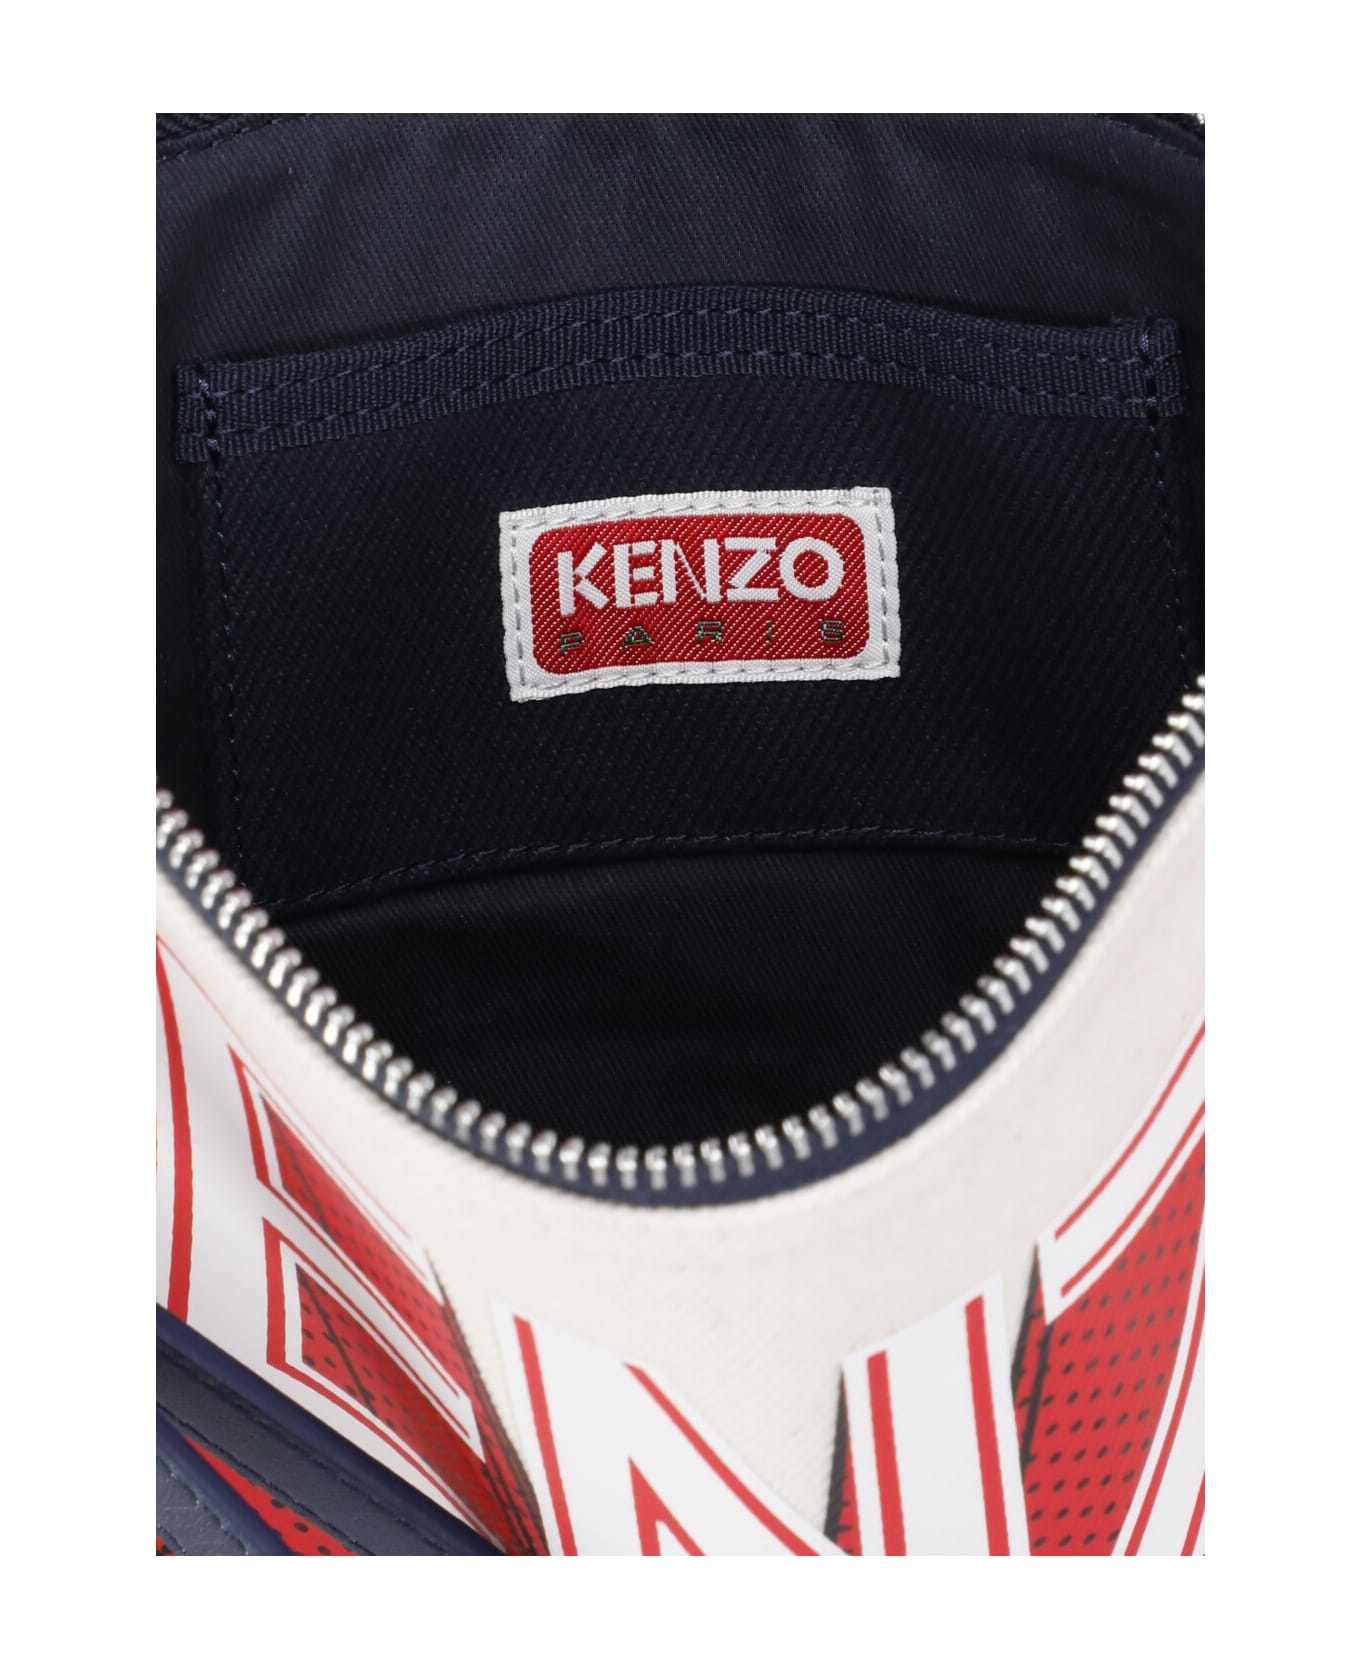 Kenzo Clutch Bag With Logo - Beige